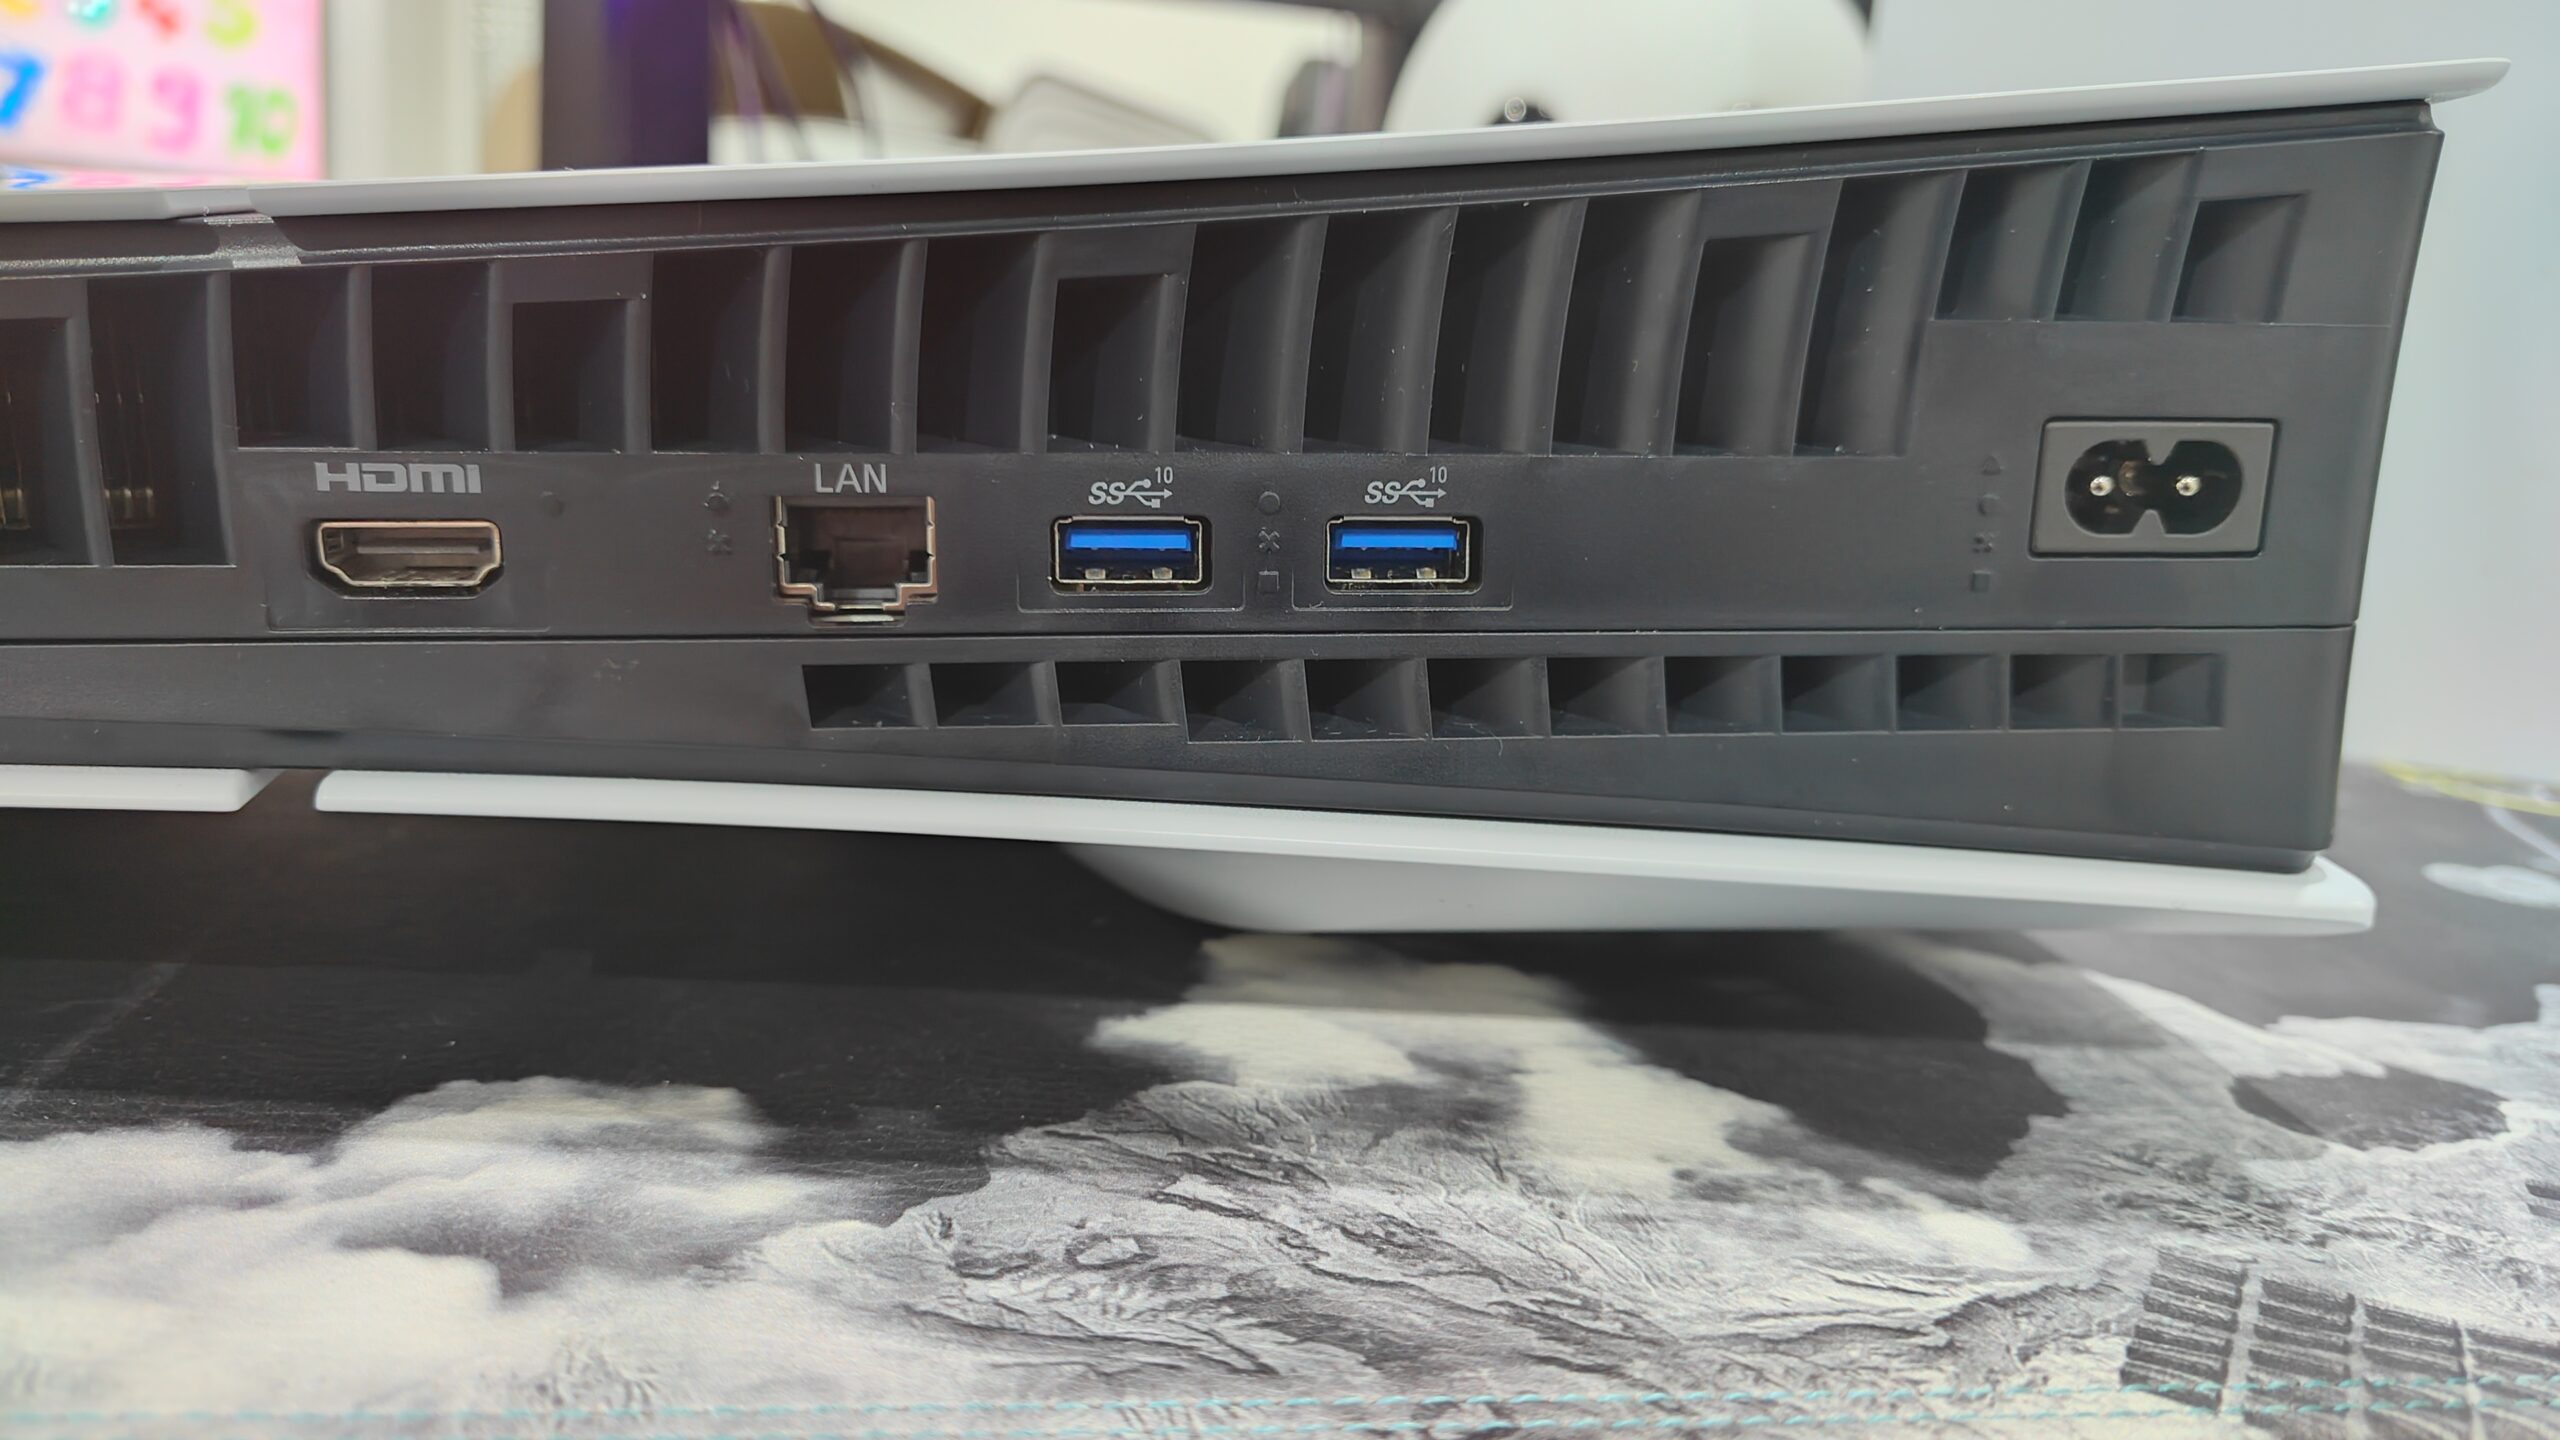 PS5 Slim : le lecteur amovible nécessite une connexion internet